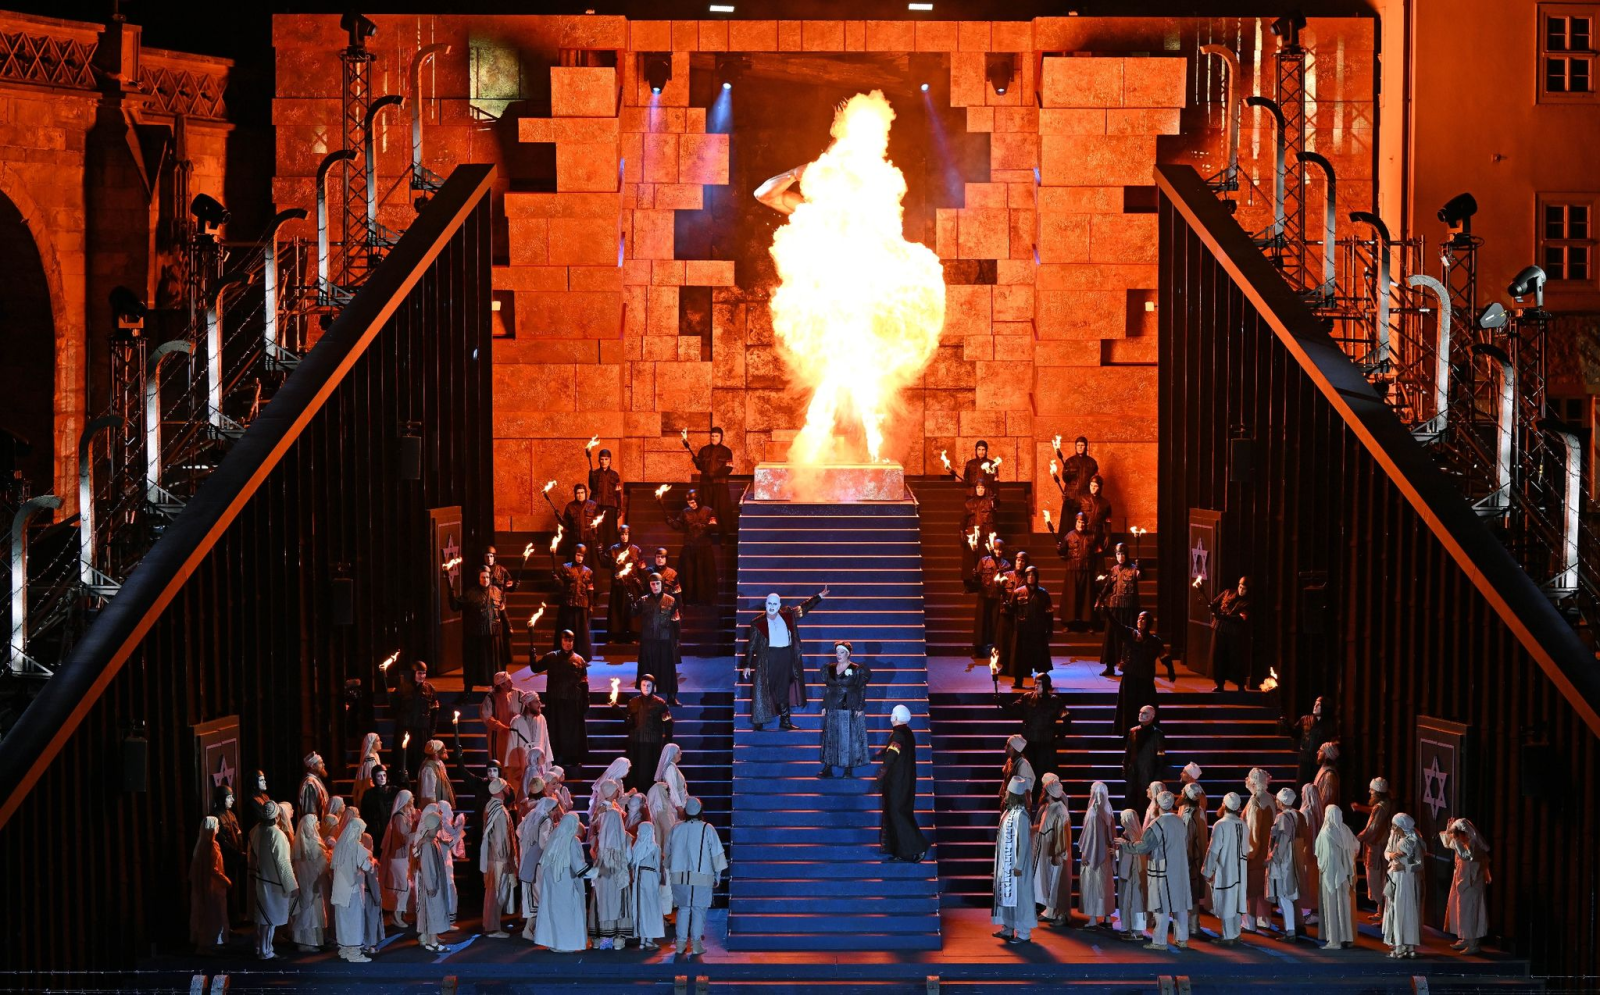 Solisten, Opernchor und Statisten proben eine Szene der Oper "Nabucco" von Giuseppe Verdi für die Domstufen-Festspiele.